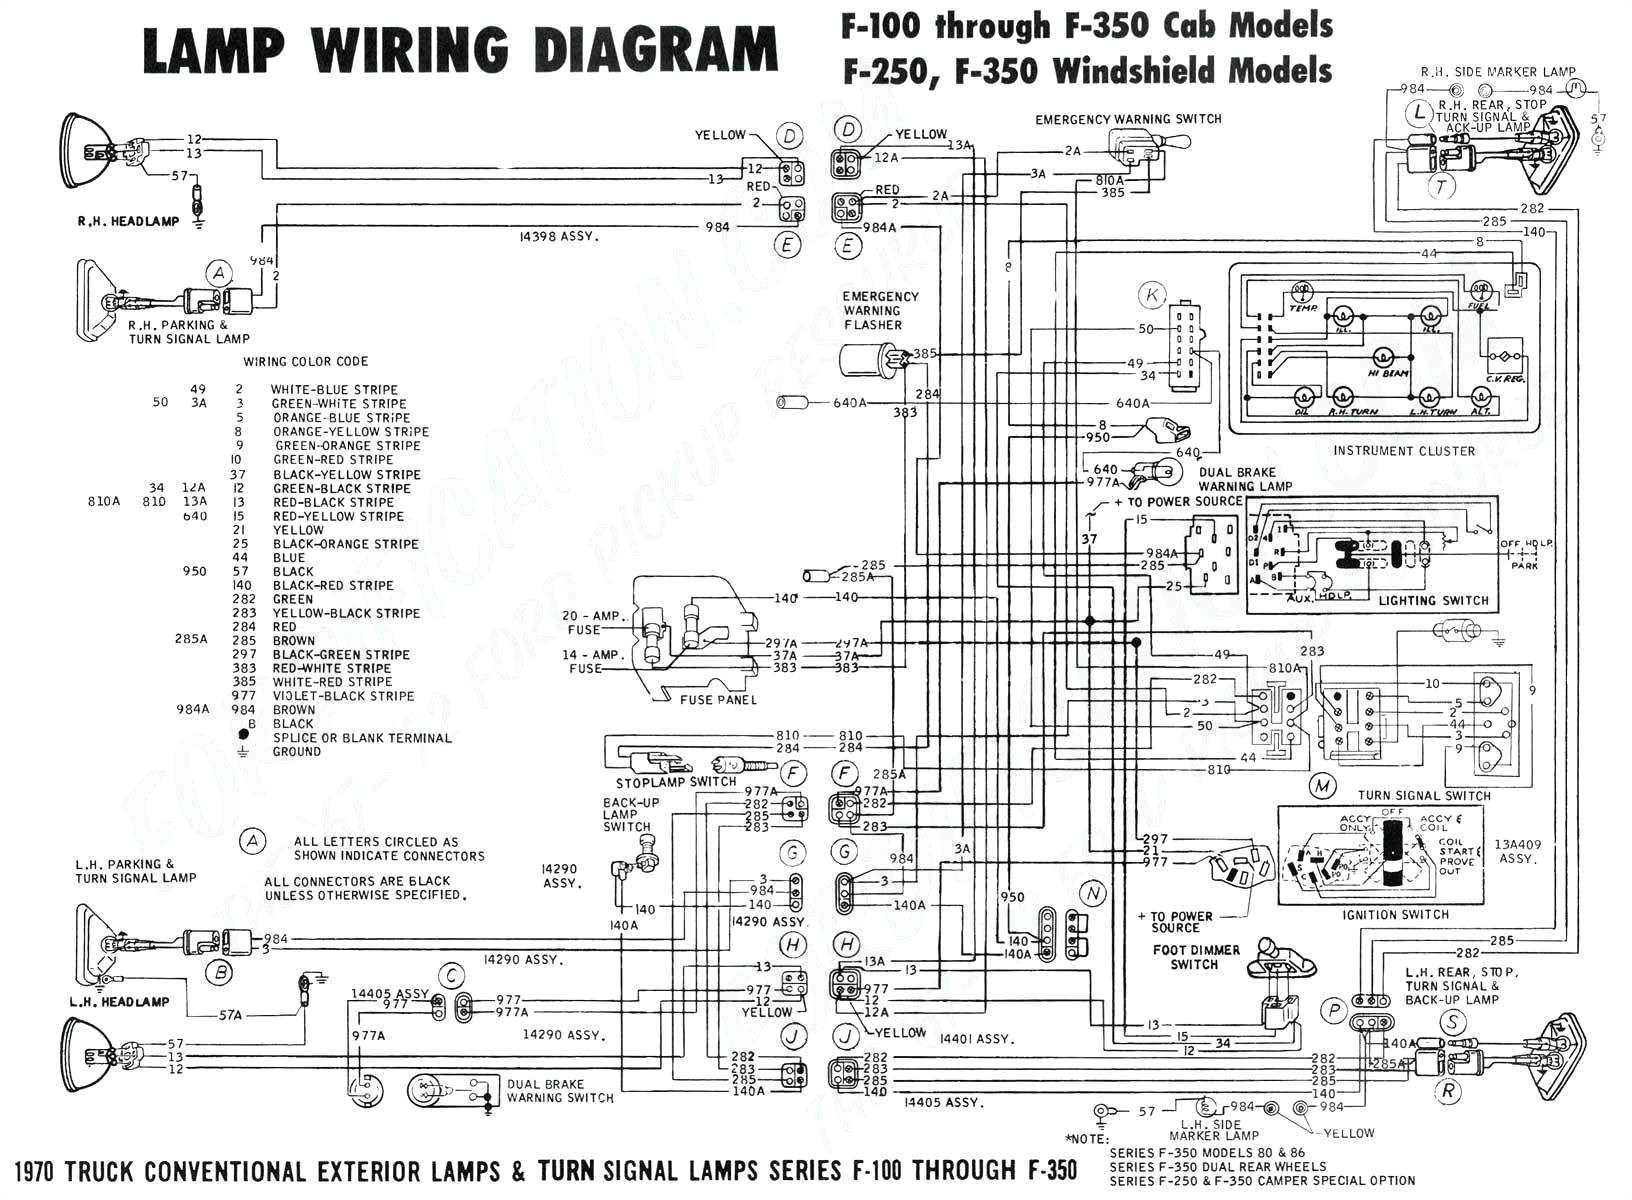 2010 f150 wiring diagram wiring diagram blog 2010 f150 wiring schematic